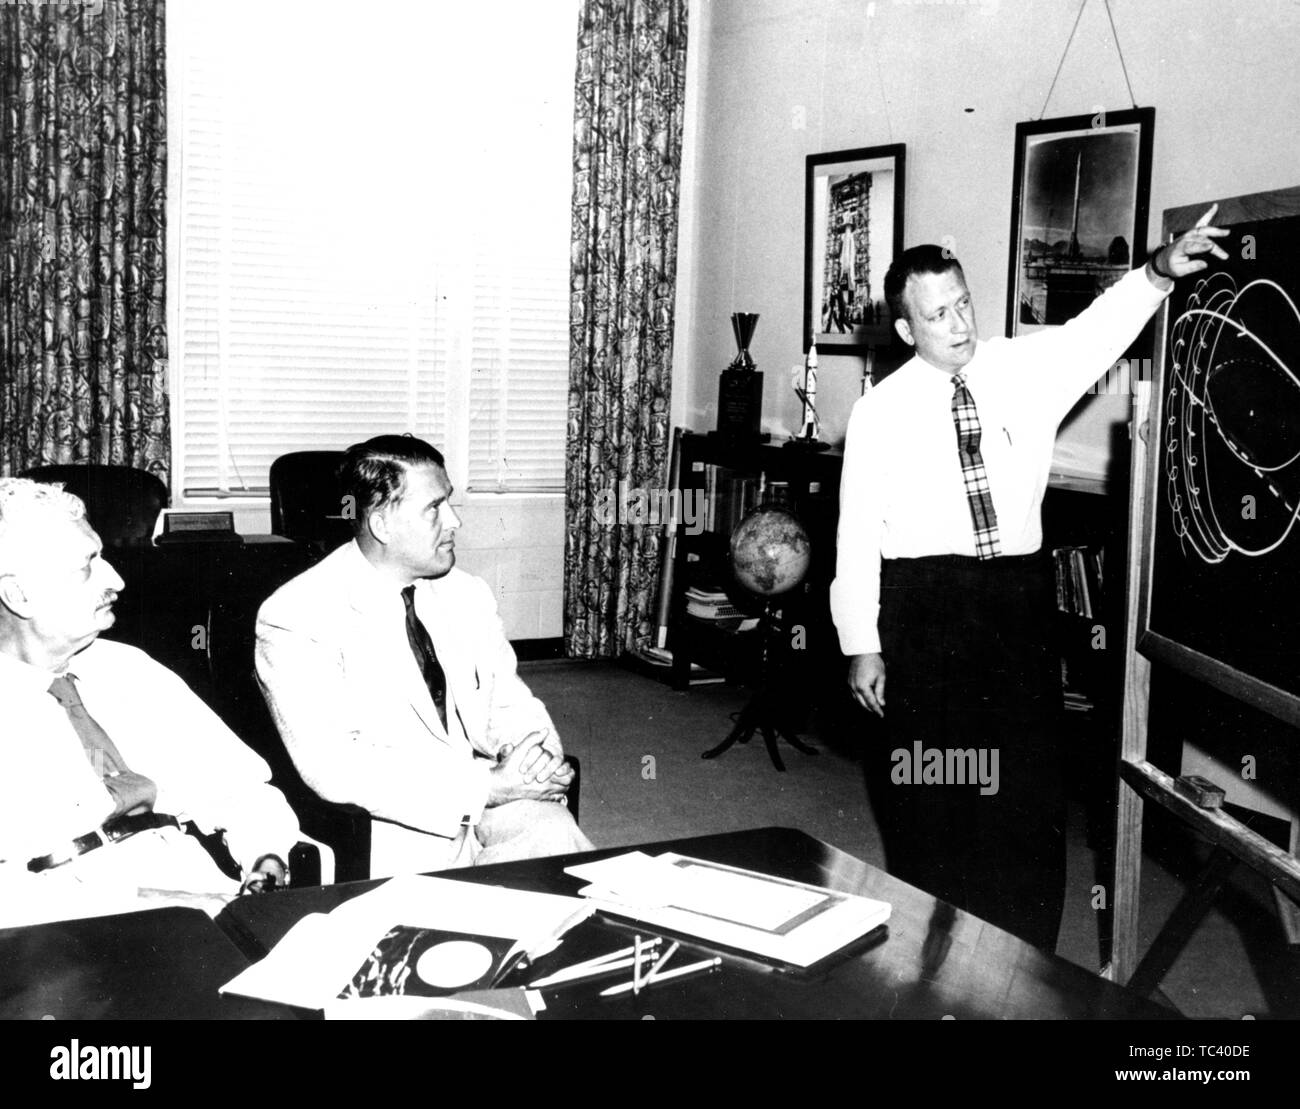 Charles Lundquist présente des trajectoires orbitales à Hermann Oberth et Wernher Von Braun à l'Army Ballistic Missile Agency à Huntsville, Alabama, le 28 juin 1958. Droit avec la permission de la National Aeronautics and Space Administration (NASA). () Banque D'Images